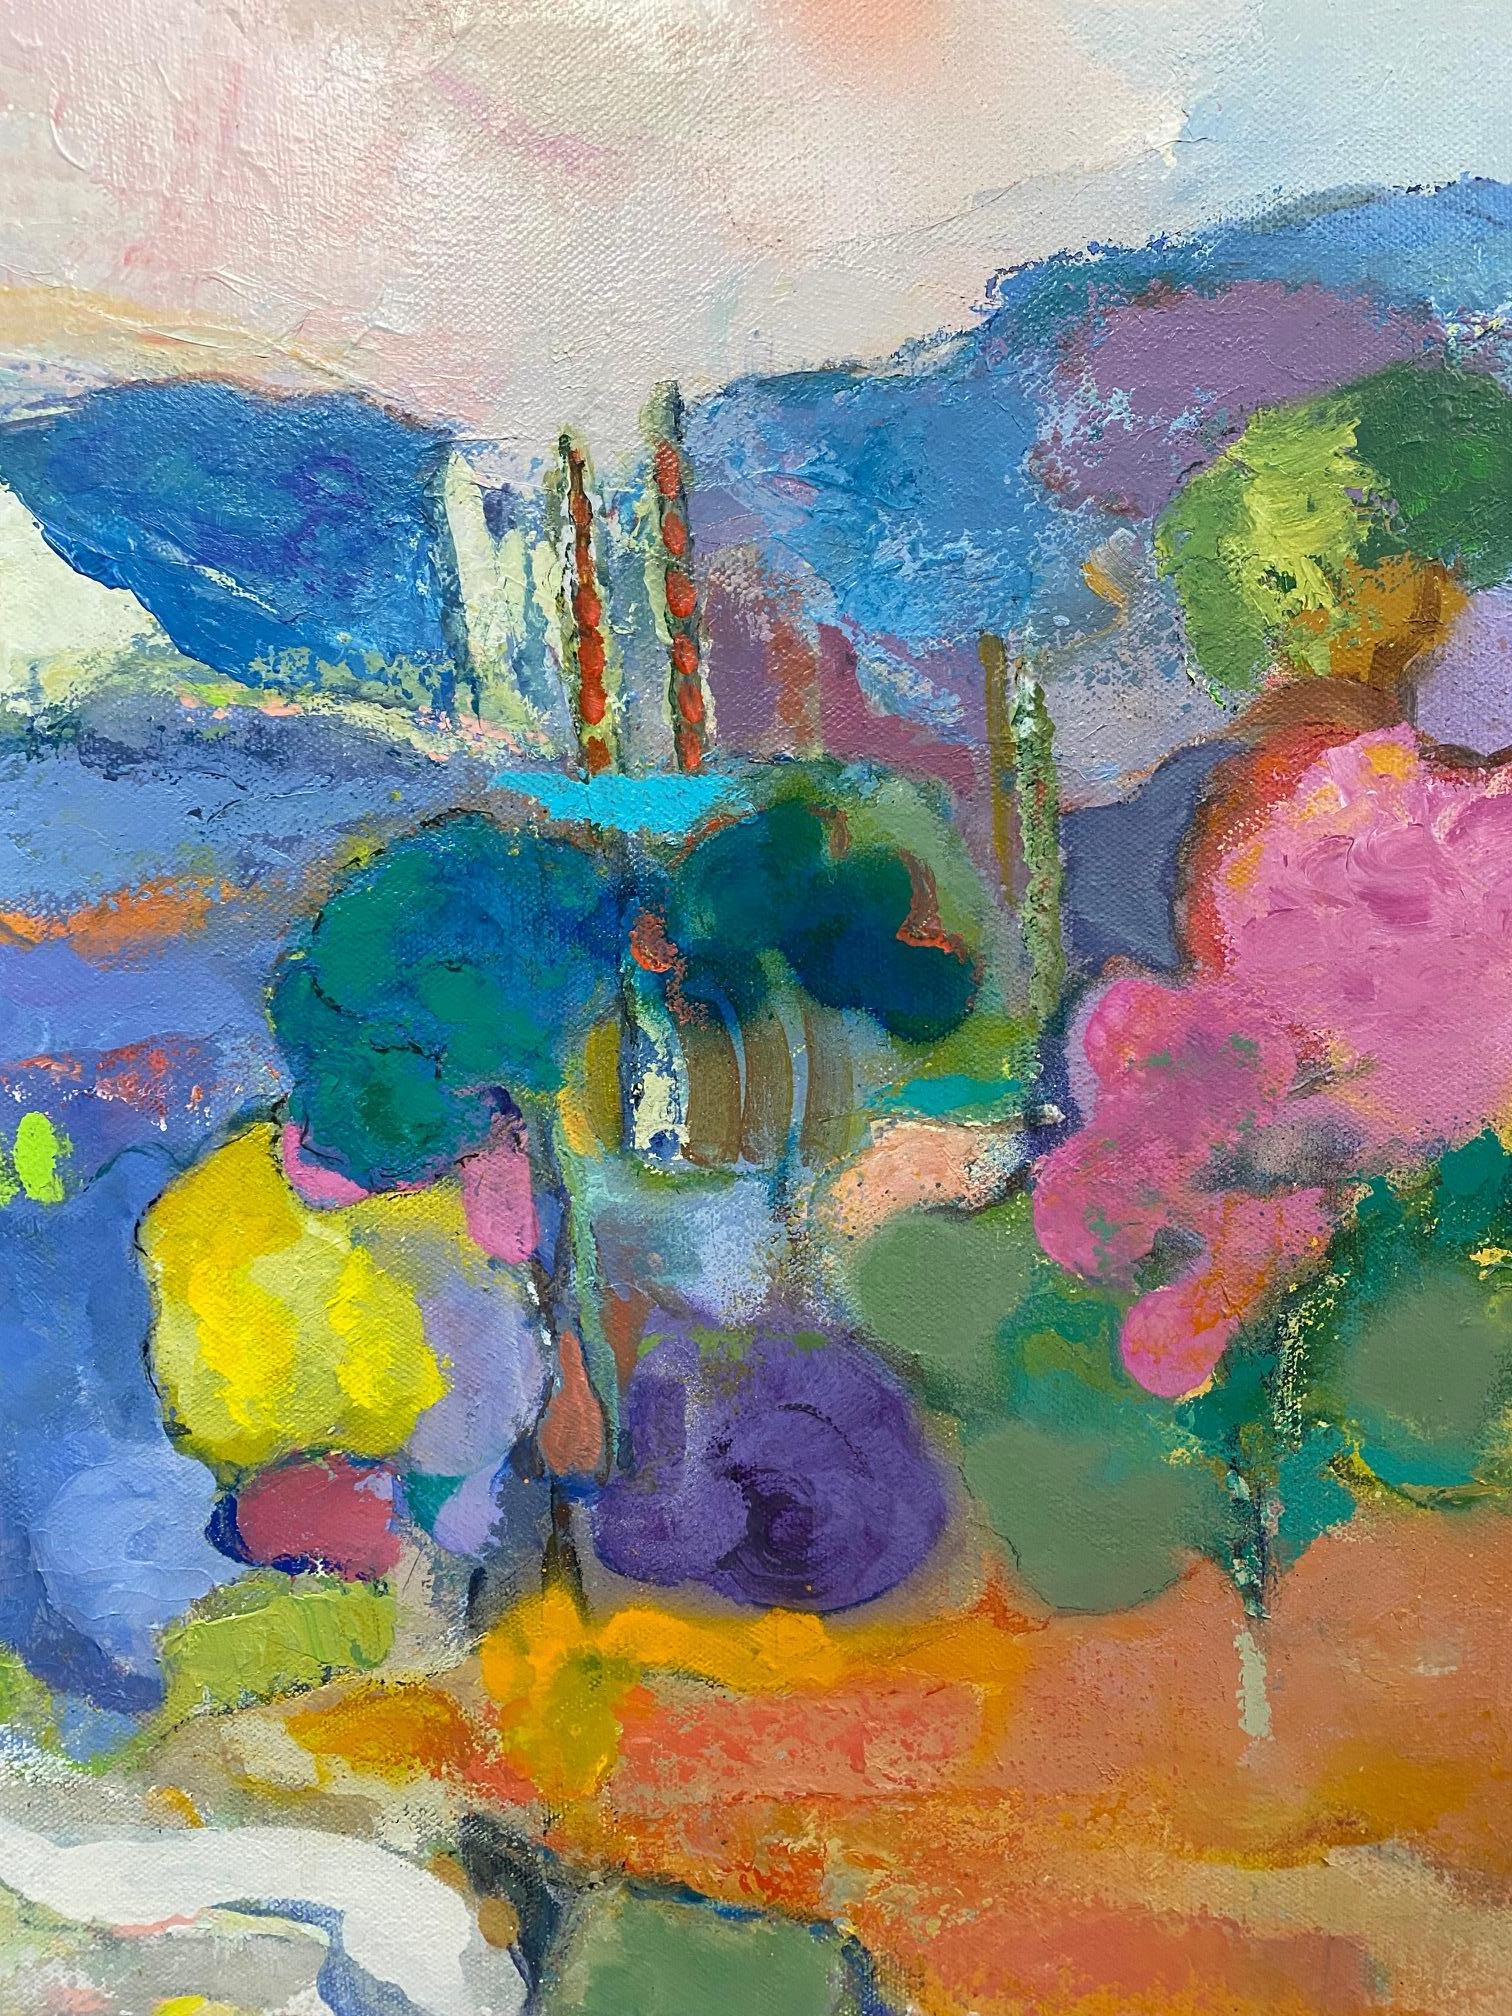 Lake Como, original 24x24 abstract expressionist Italian landscape - Abstract Expressionist Painting by Carol Carpenter